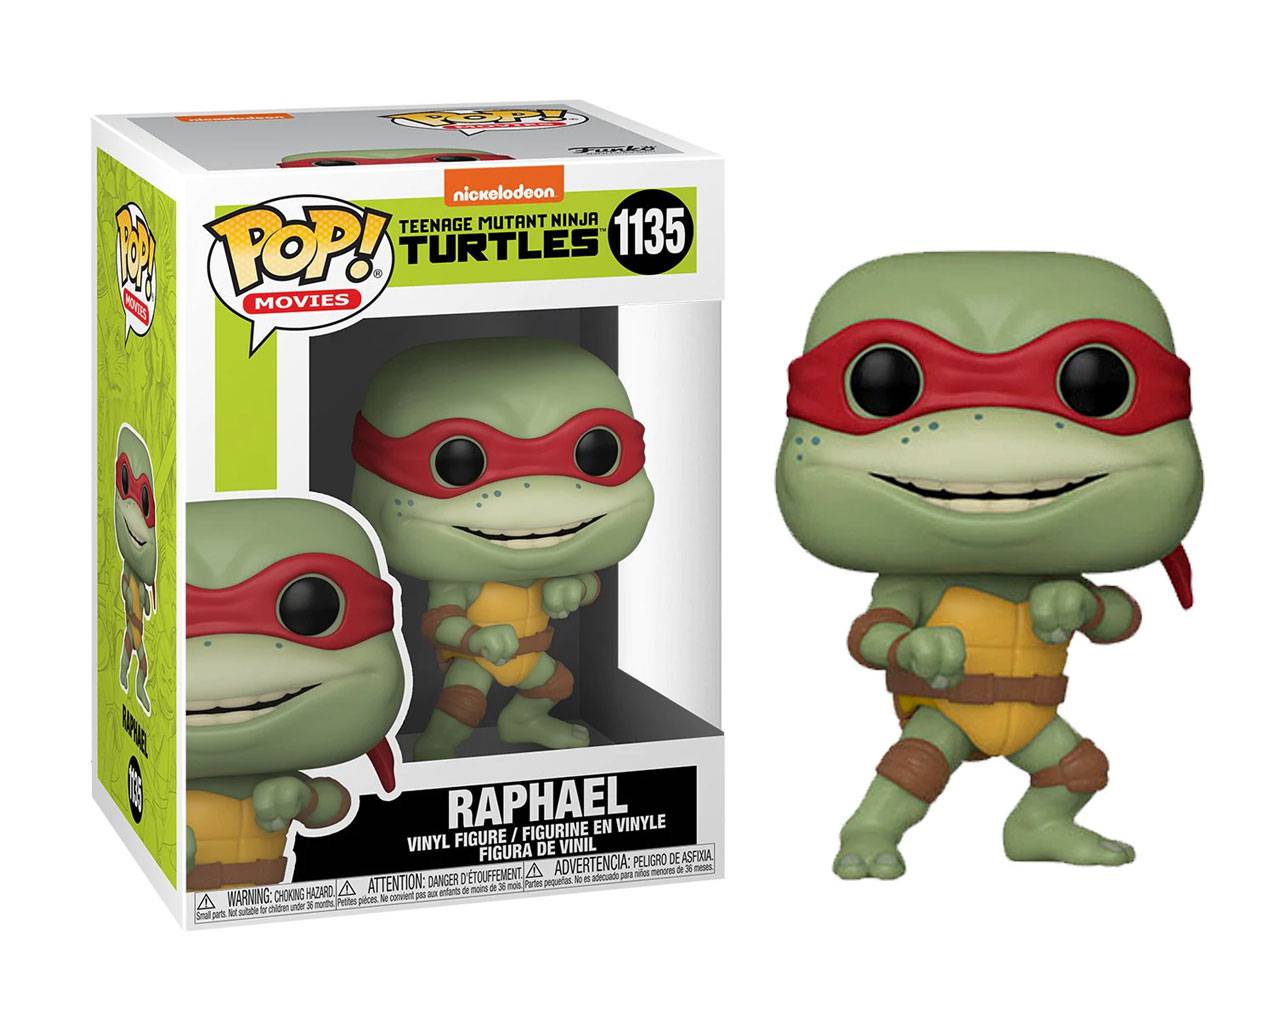 Raphael (Teenage Mutant Ninja Turtles) Pop! Vinyl